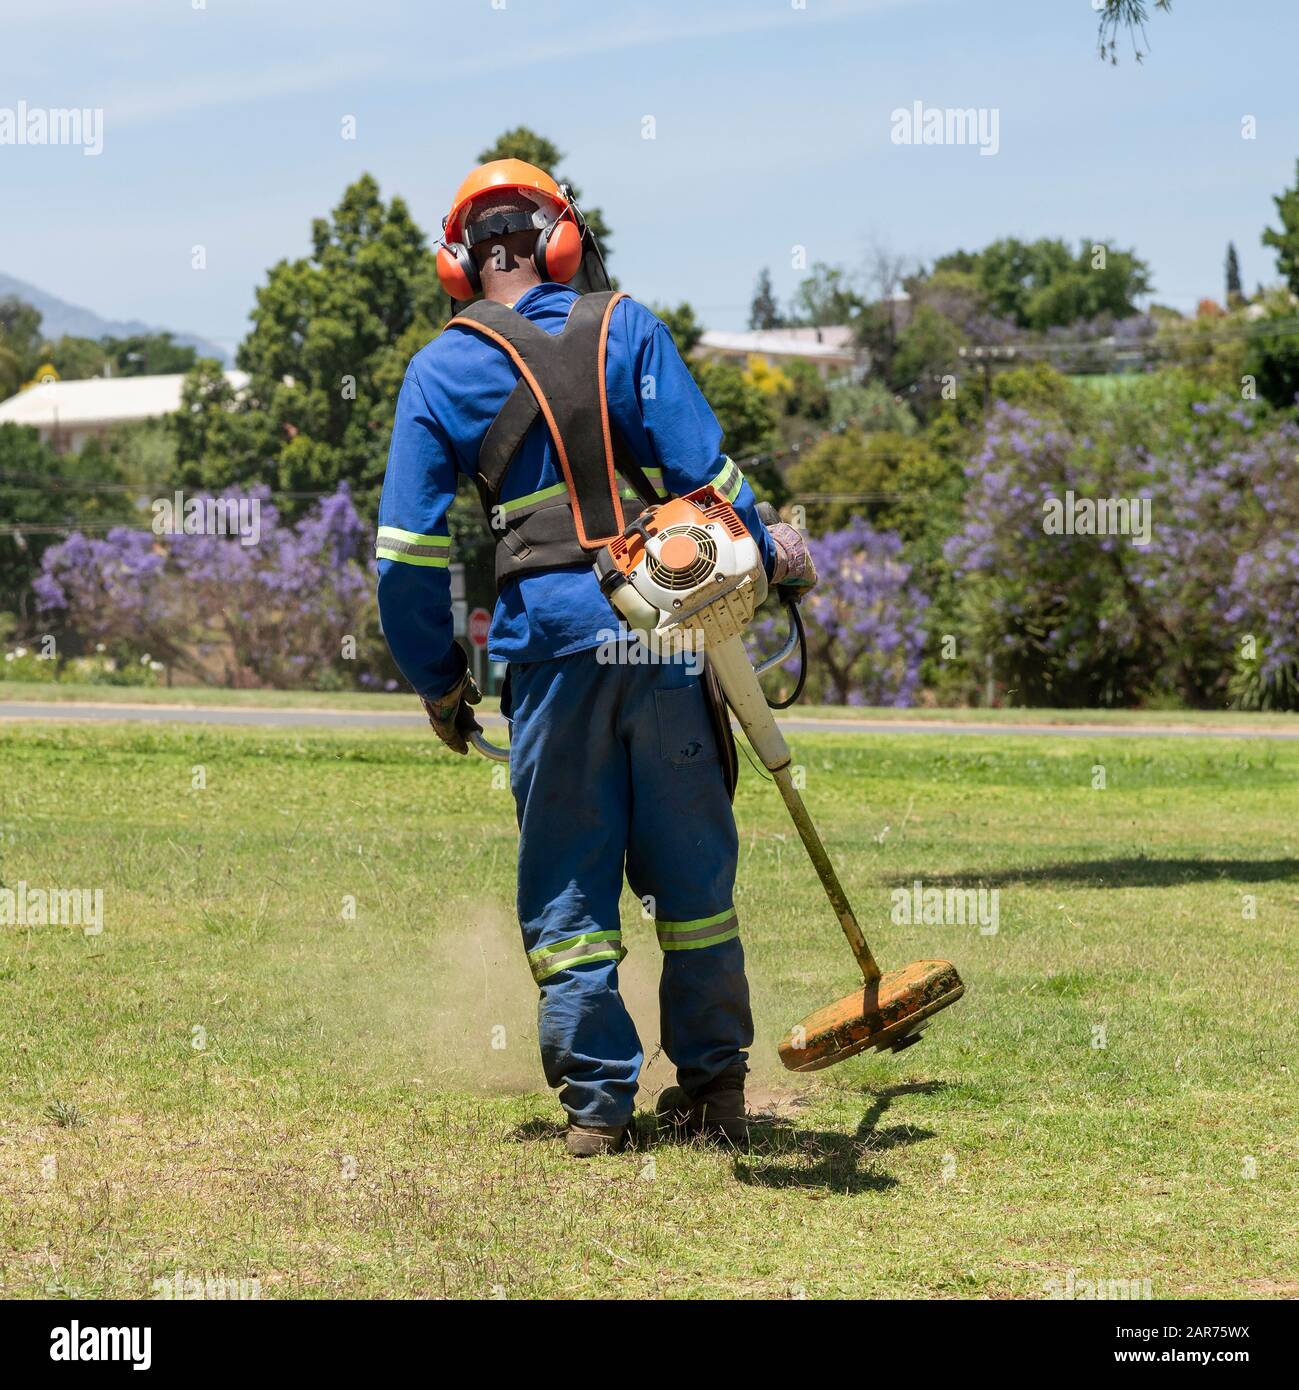 El hombre que lleva ropa protectora y casco de seguridad estridendo hierba en un jardín. Cabo Occidental, Sudáfrica Foto de stock